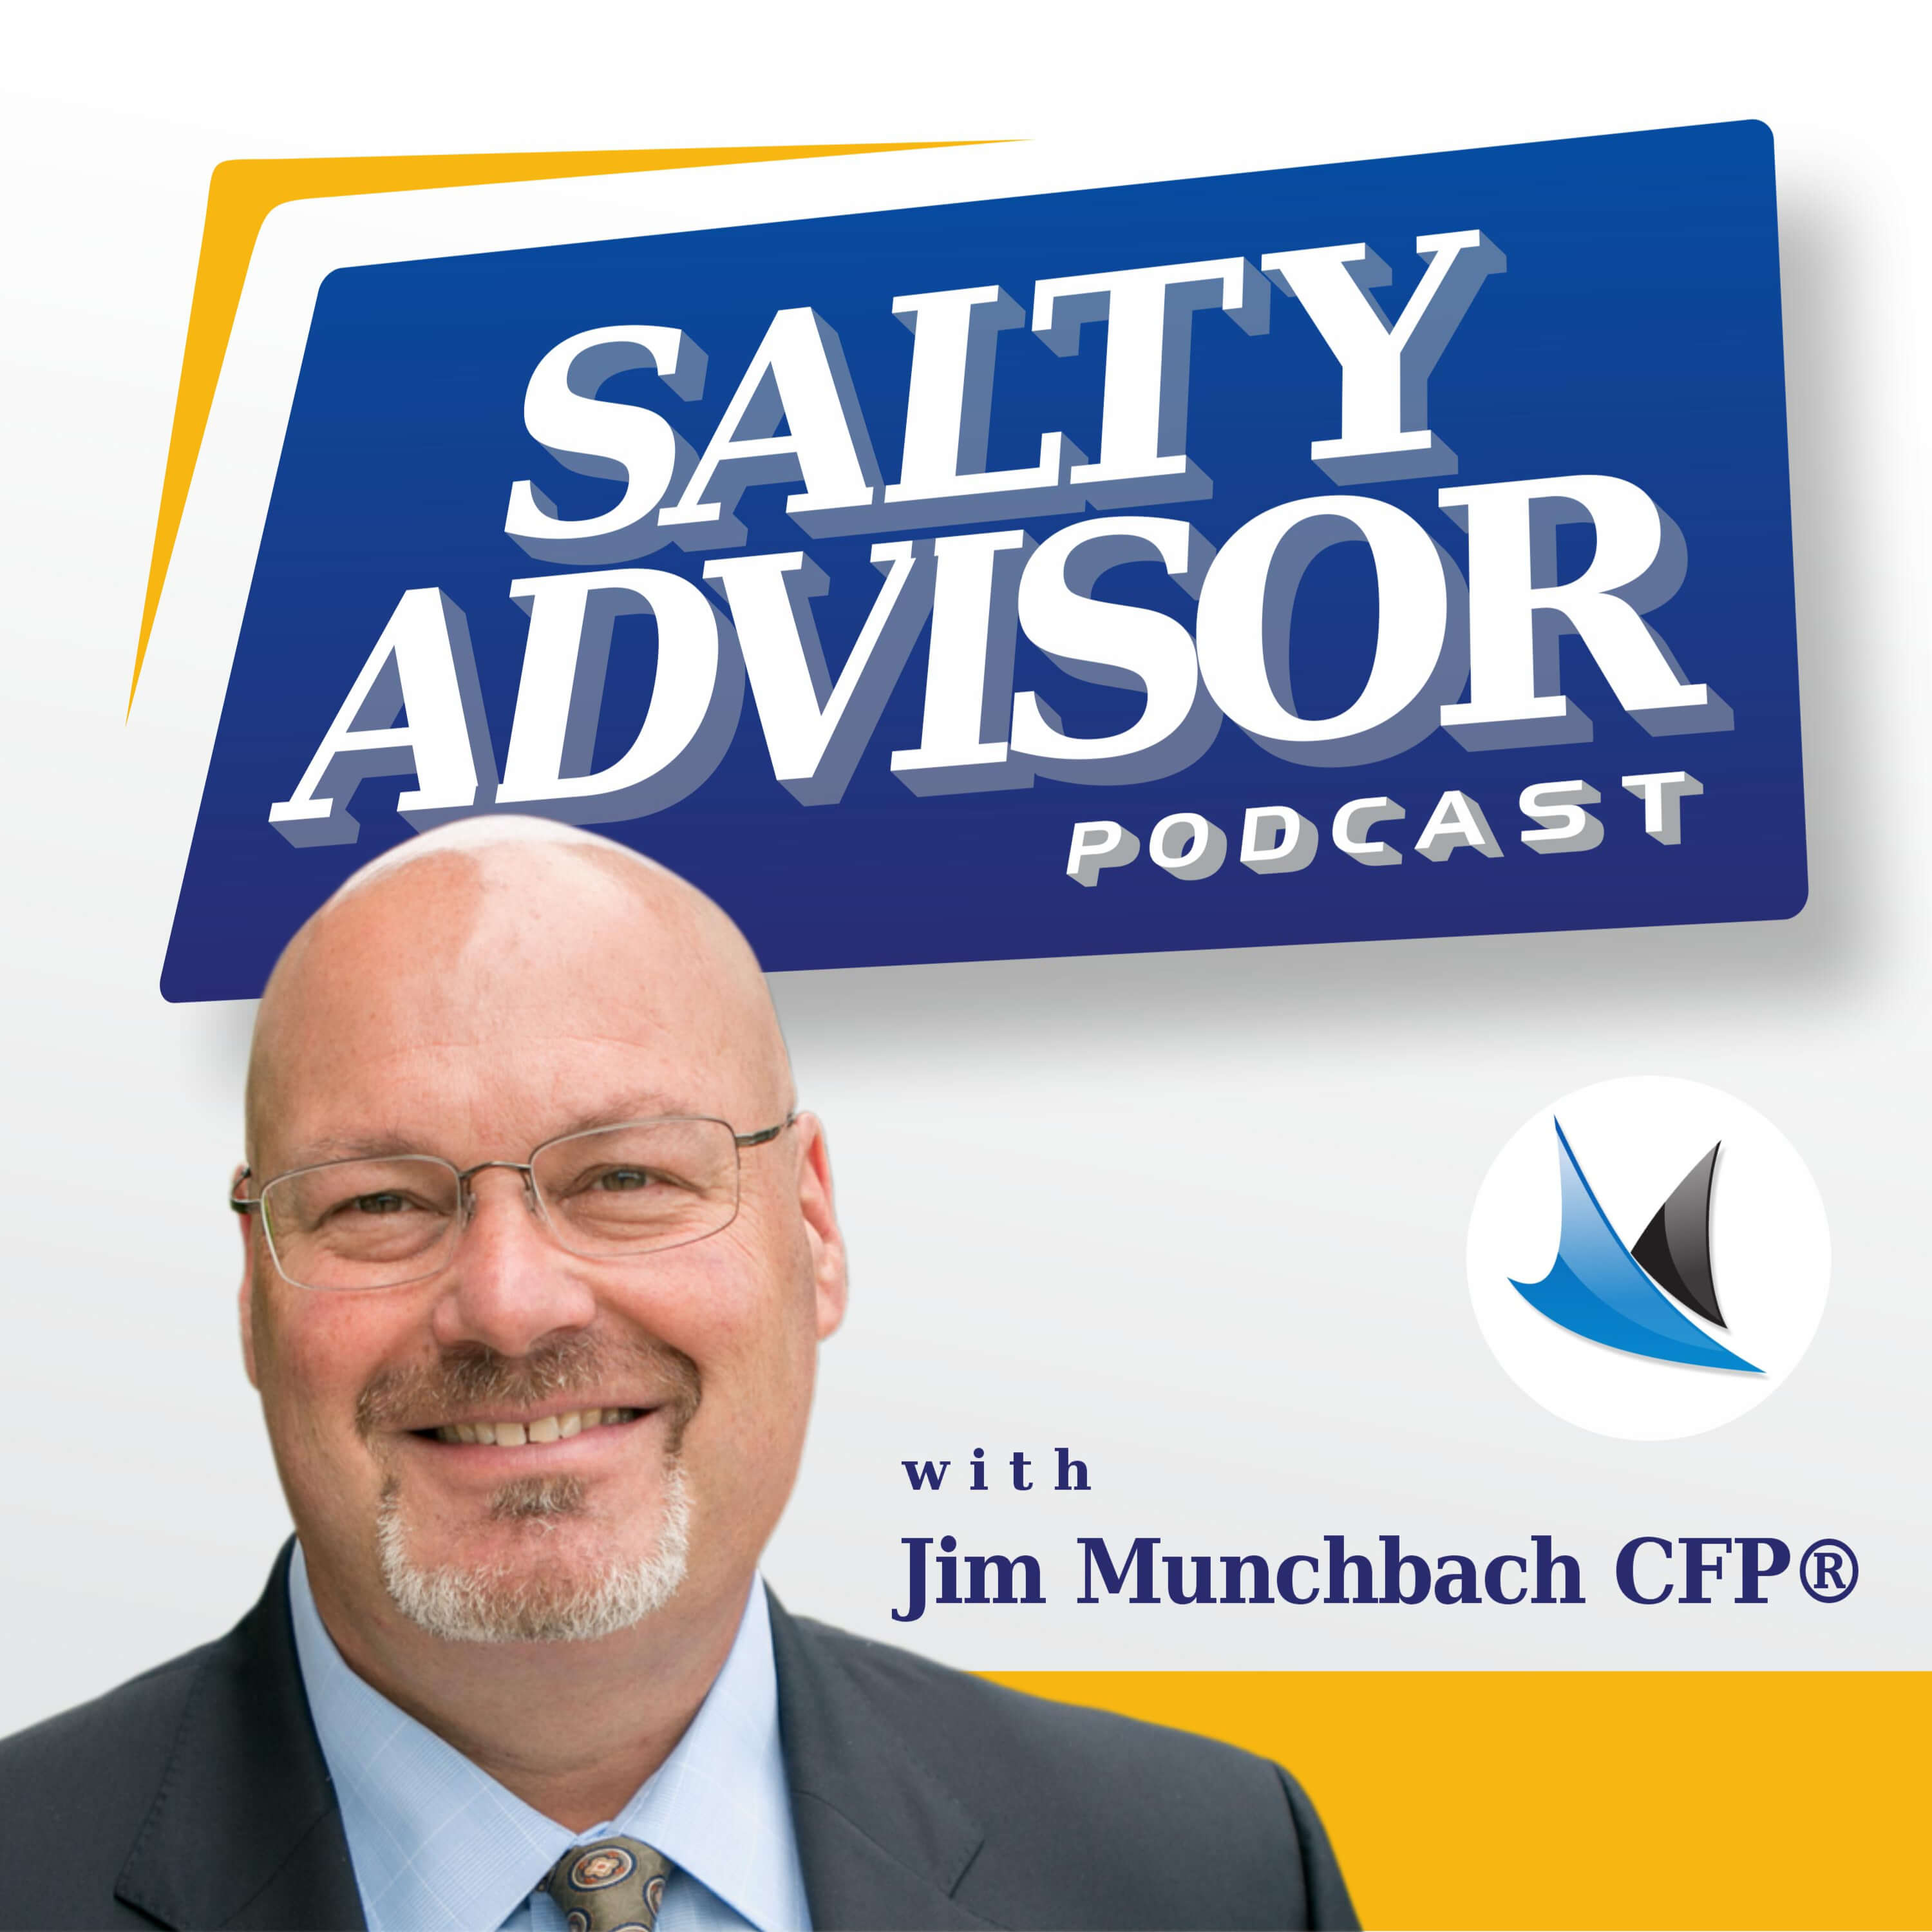 The Salty Advisor Podcast